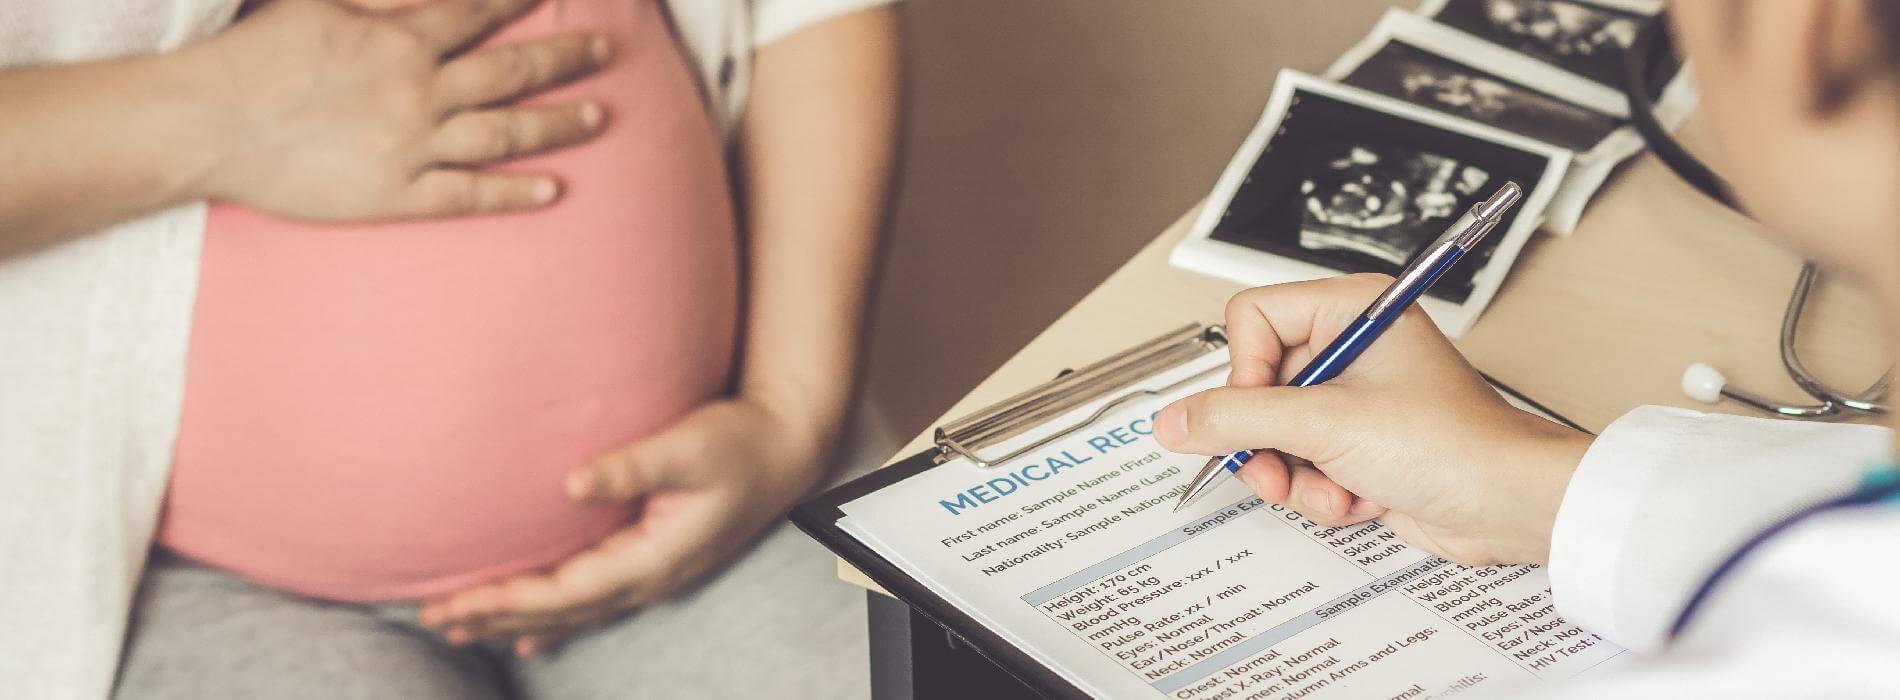 Dlaczego warto wykonać nieinwazyjne badanie prenatalne?